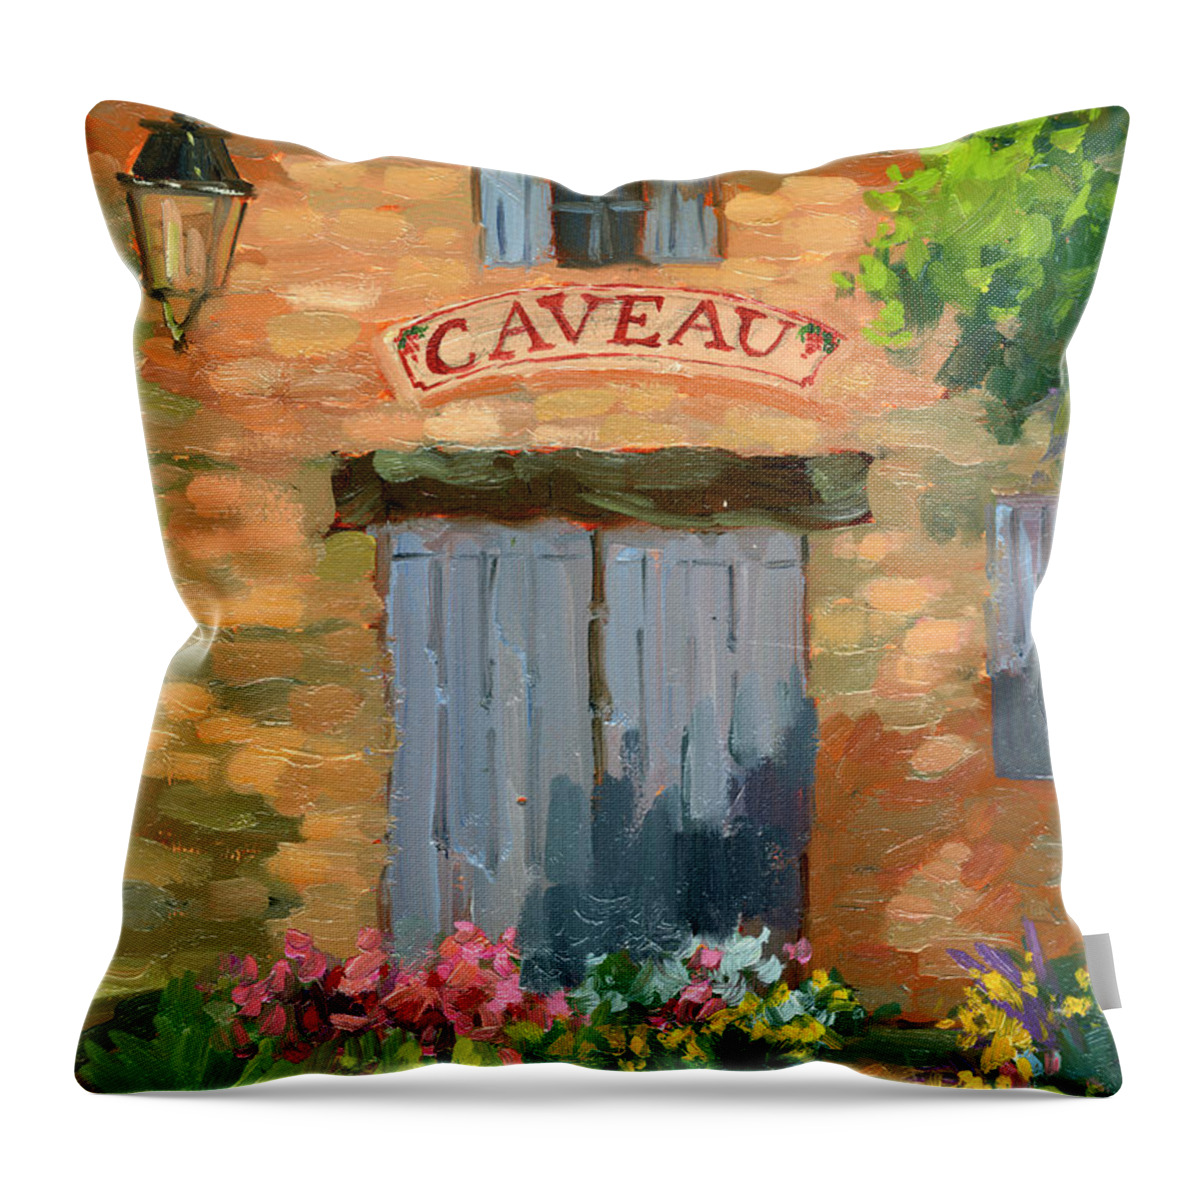 Portes Des Caveau Throw Pillow featuring the painting Portes Des Caveau by Diane McClary